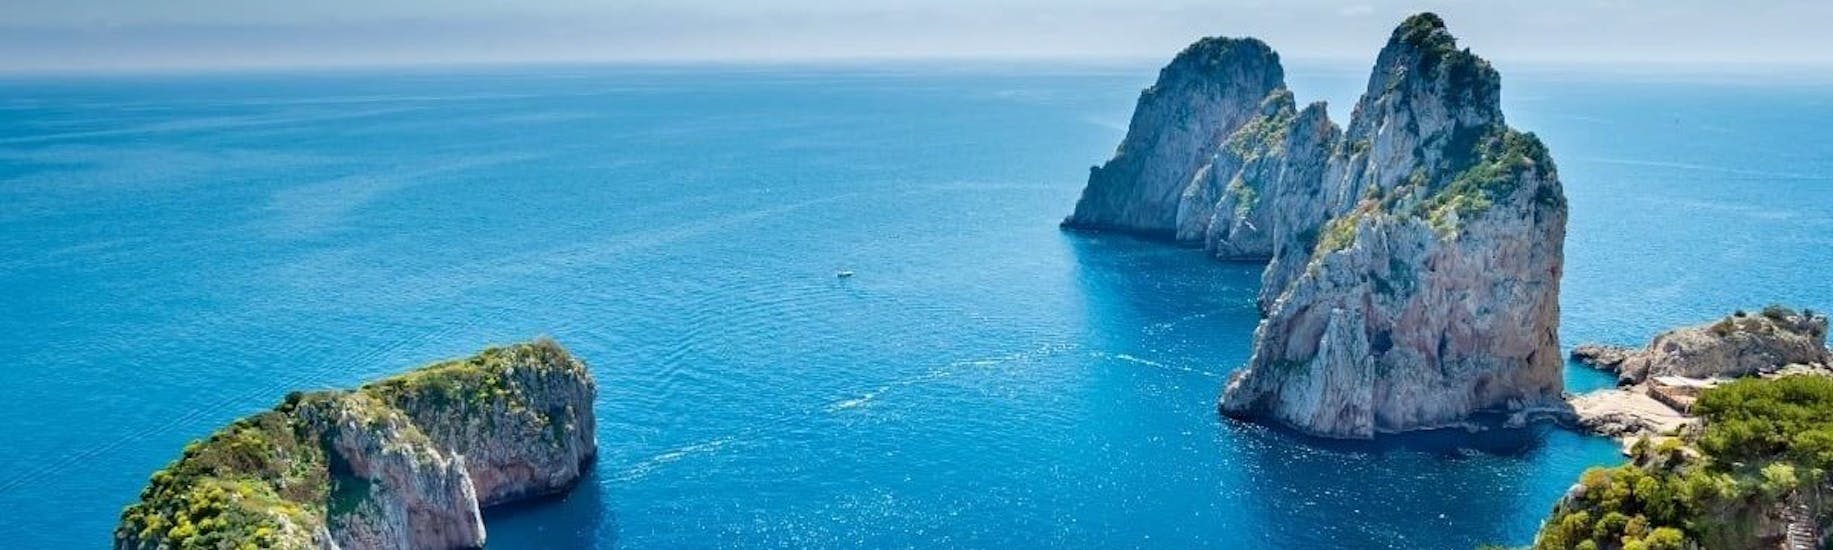 Vista dei Faraglioni durante la gita in barca da Pozzuoli a Capri e Ischia con pranzo organizzata da Gestour Pozzuoli.